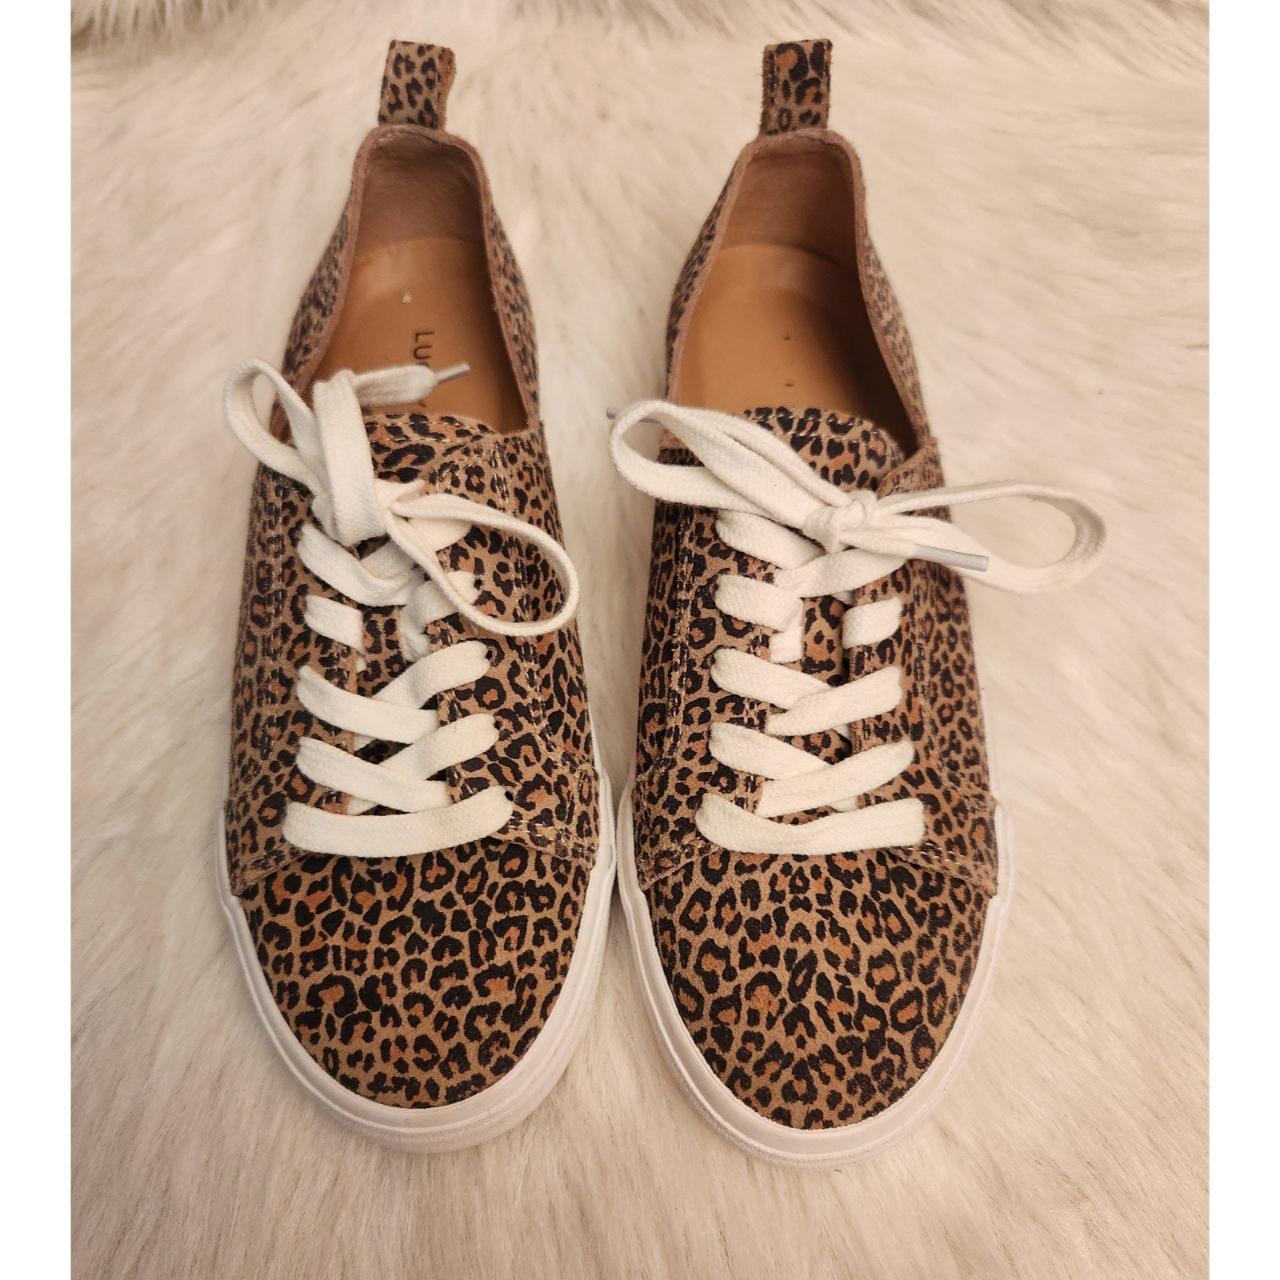 Lucky Brand Dansbey Leopard Sneakers Size... - Depop